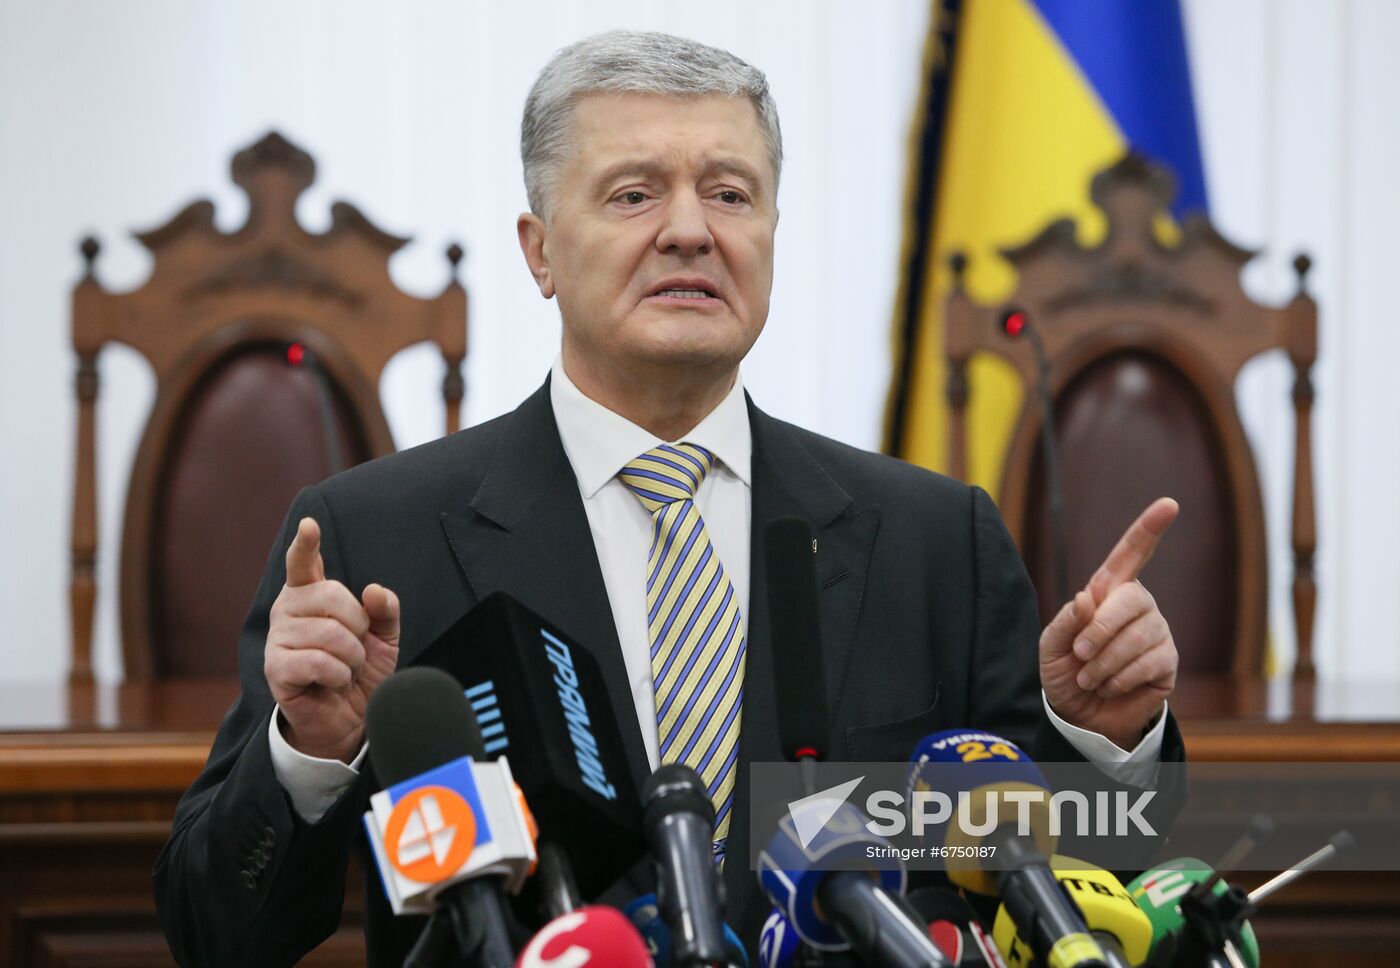 Ukraine Poroshenko Treason Trial